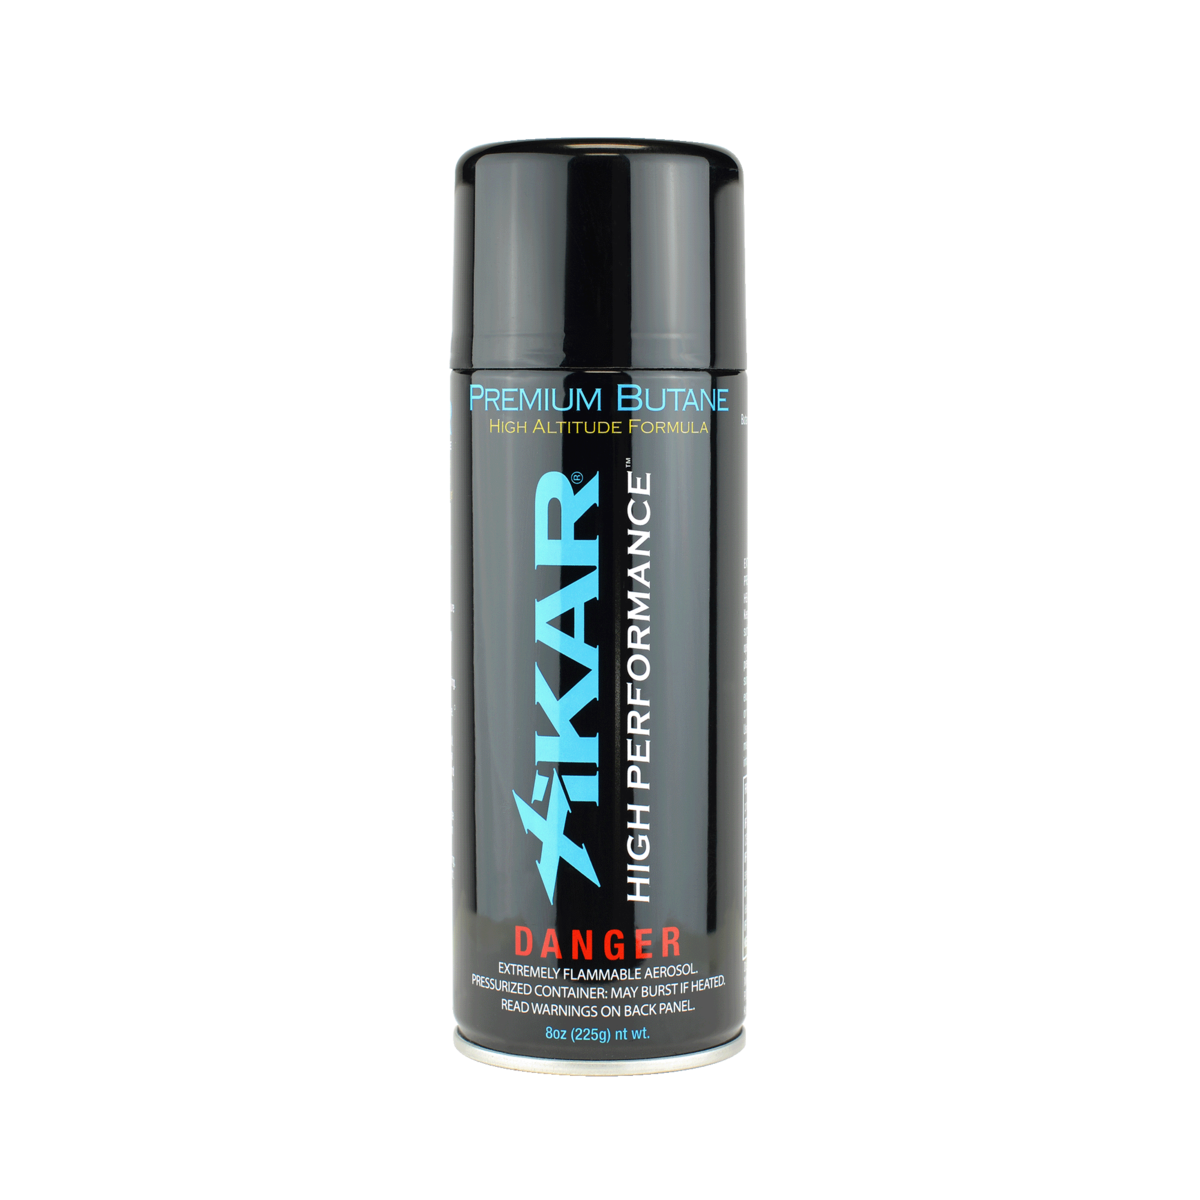 Xikar High Performance Butane Lighter Refill Fluid | 12 Pack